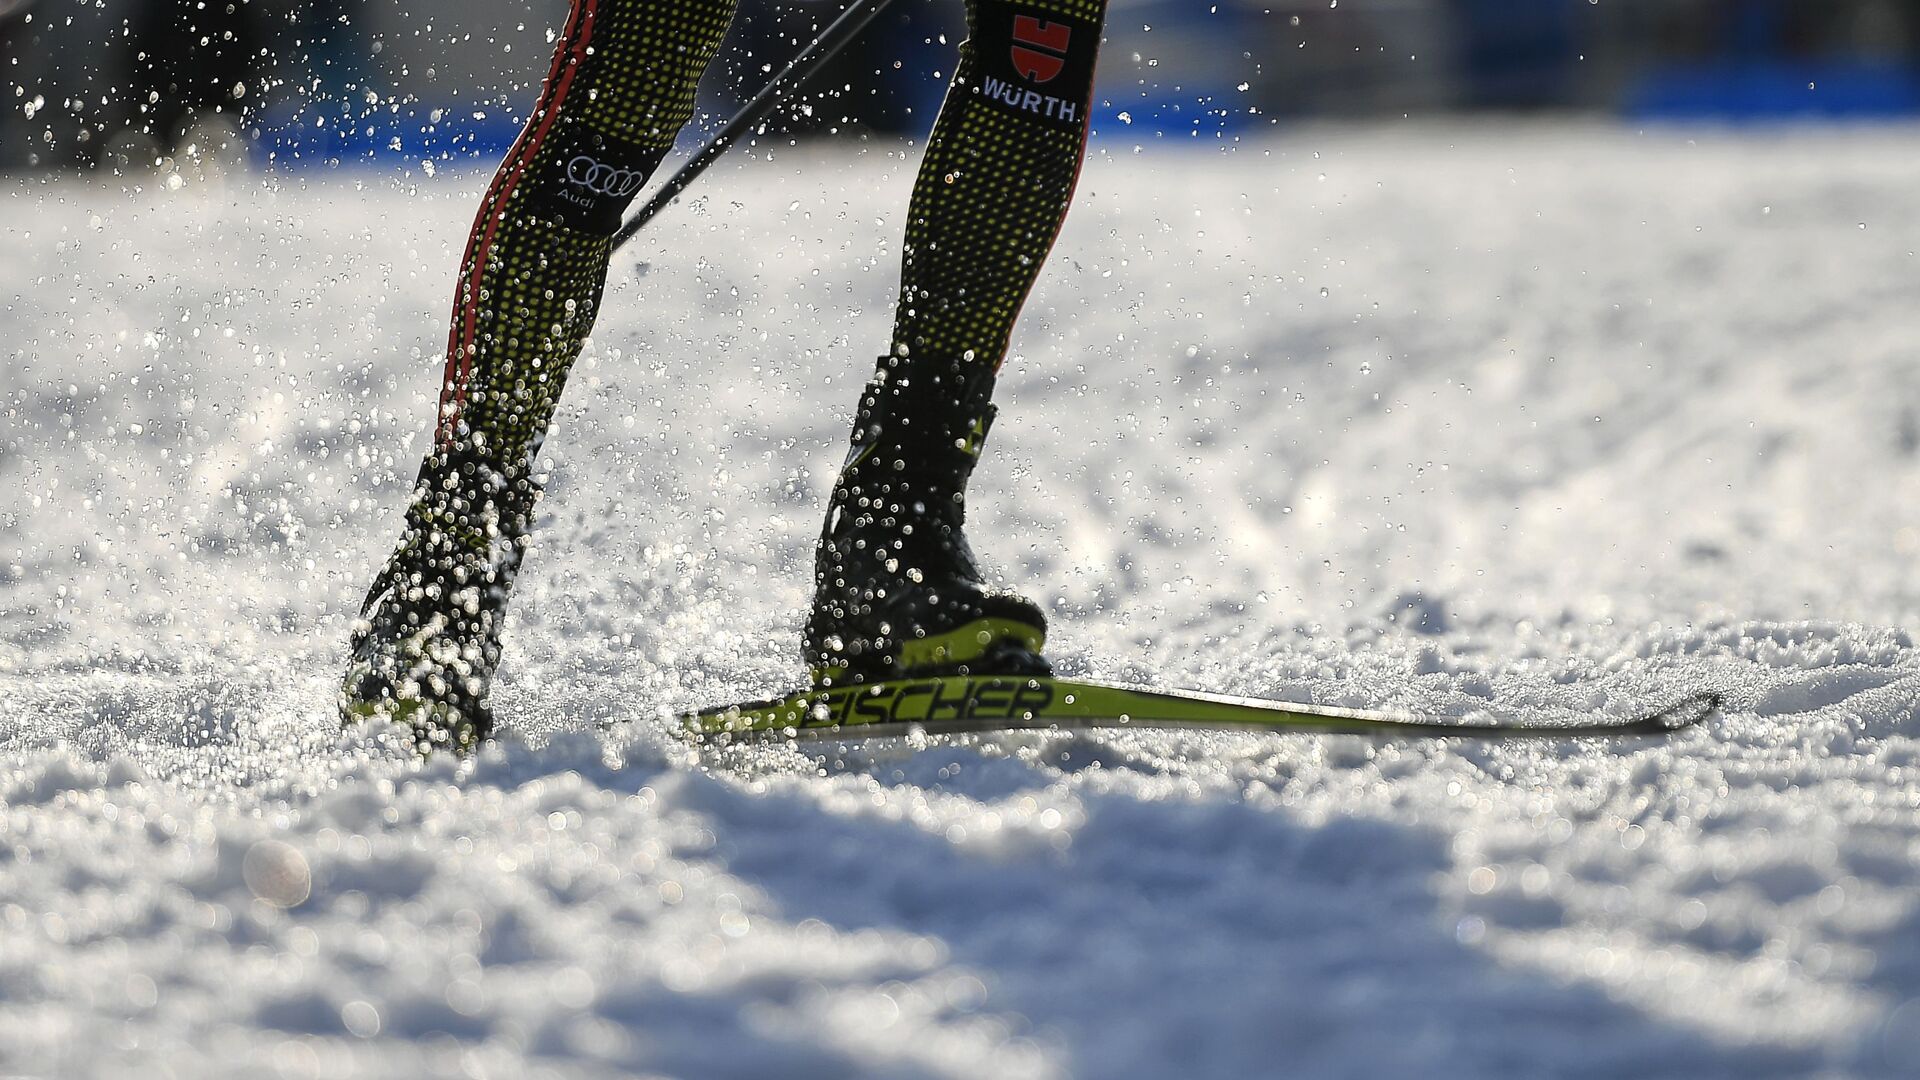 ФЛГР не нашла нарушений в работе жюри при массовом падении лыжниц в Сочи